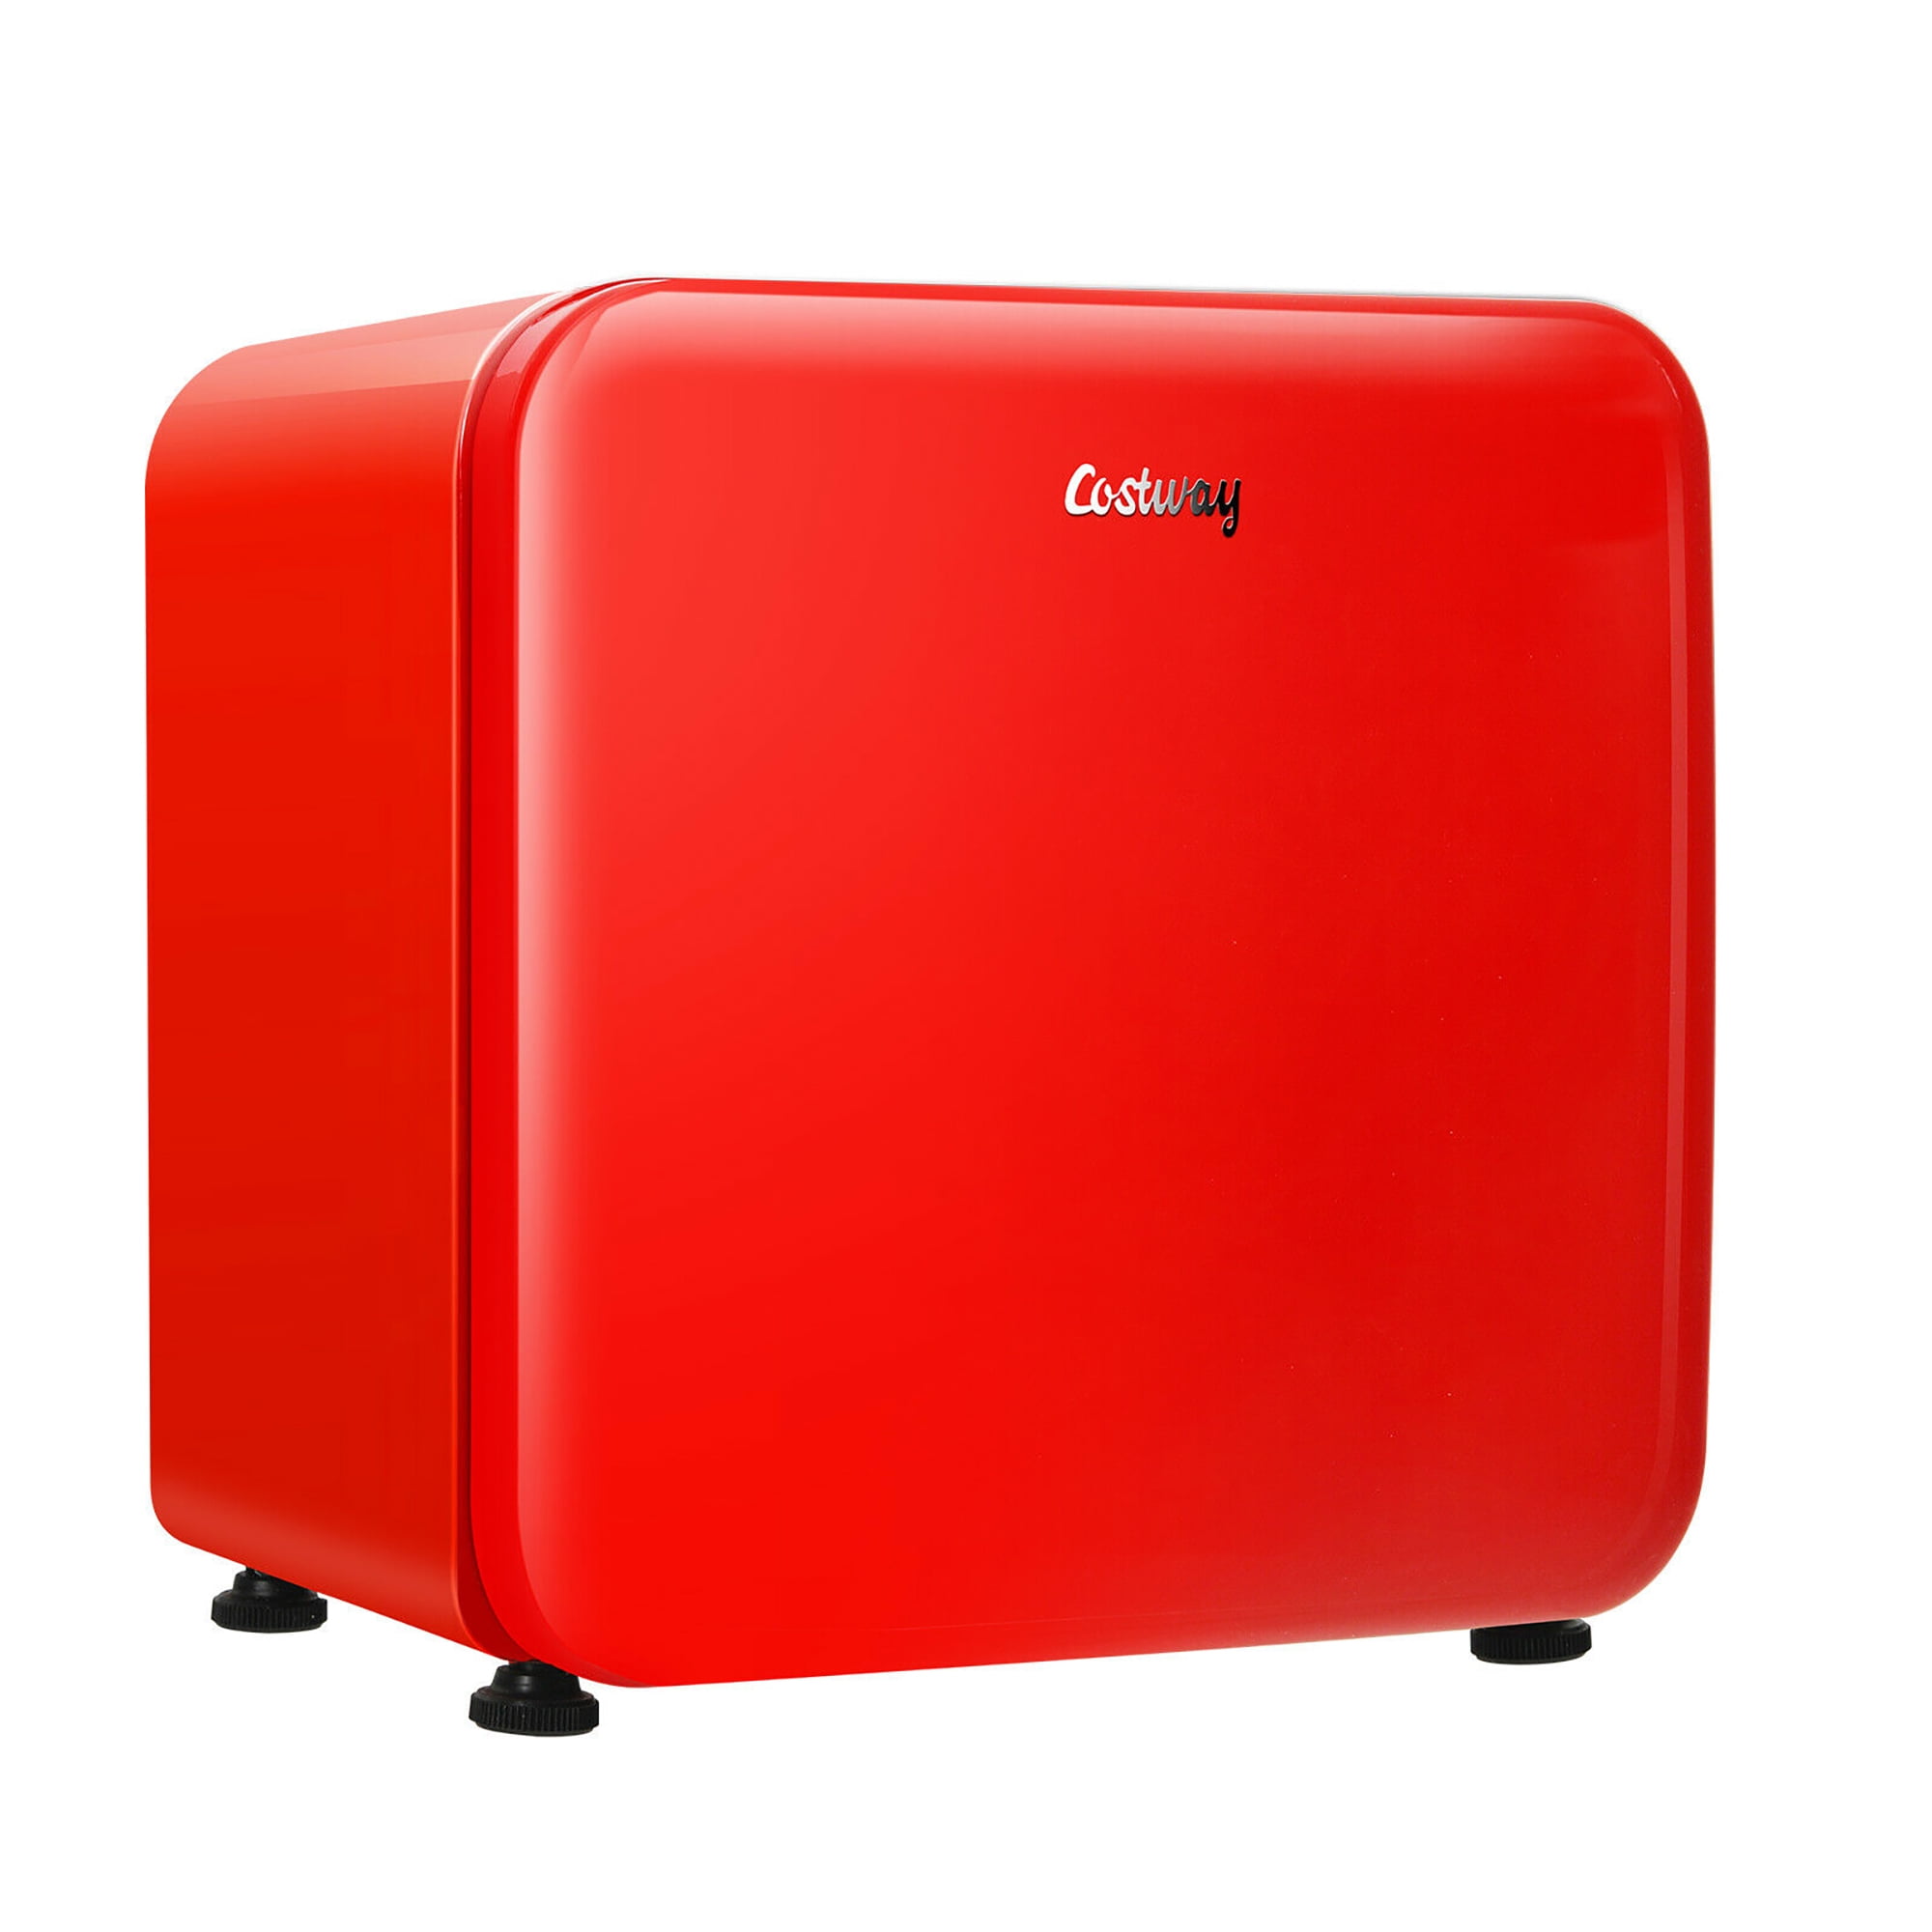 Costway 1.6 Cubic Feet Compact Refrigerator Reversible Door Mini Fridge Red  